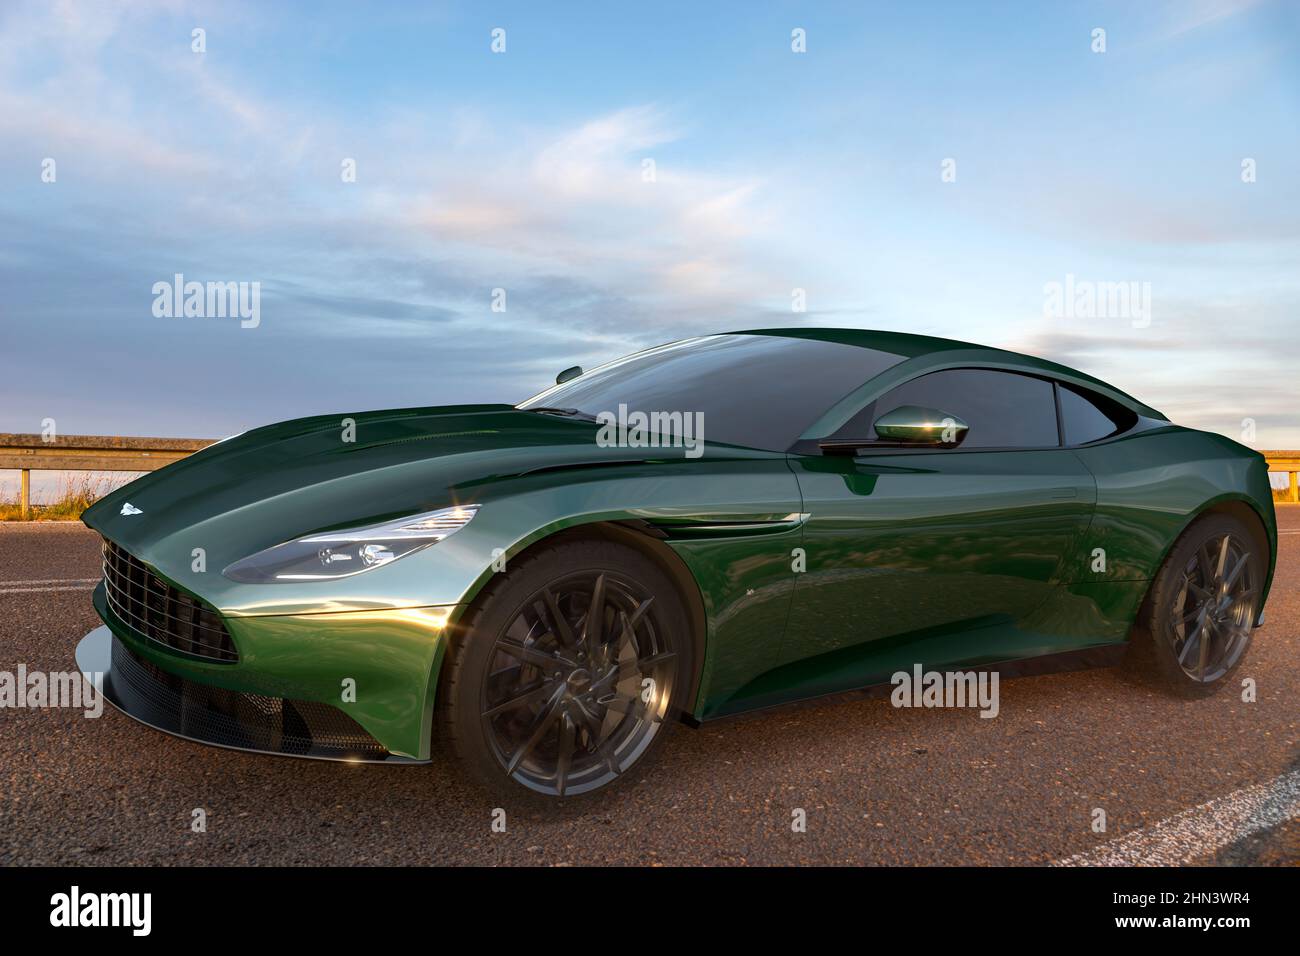 Aston Martin DB11 sullo sfondo di architettura monumentale Foto Stock